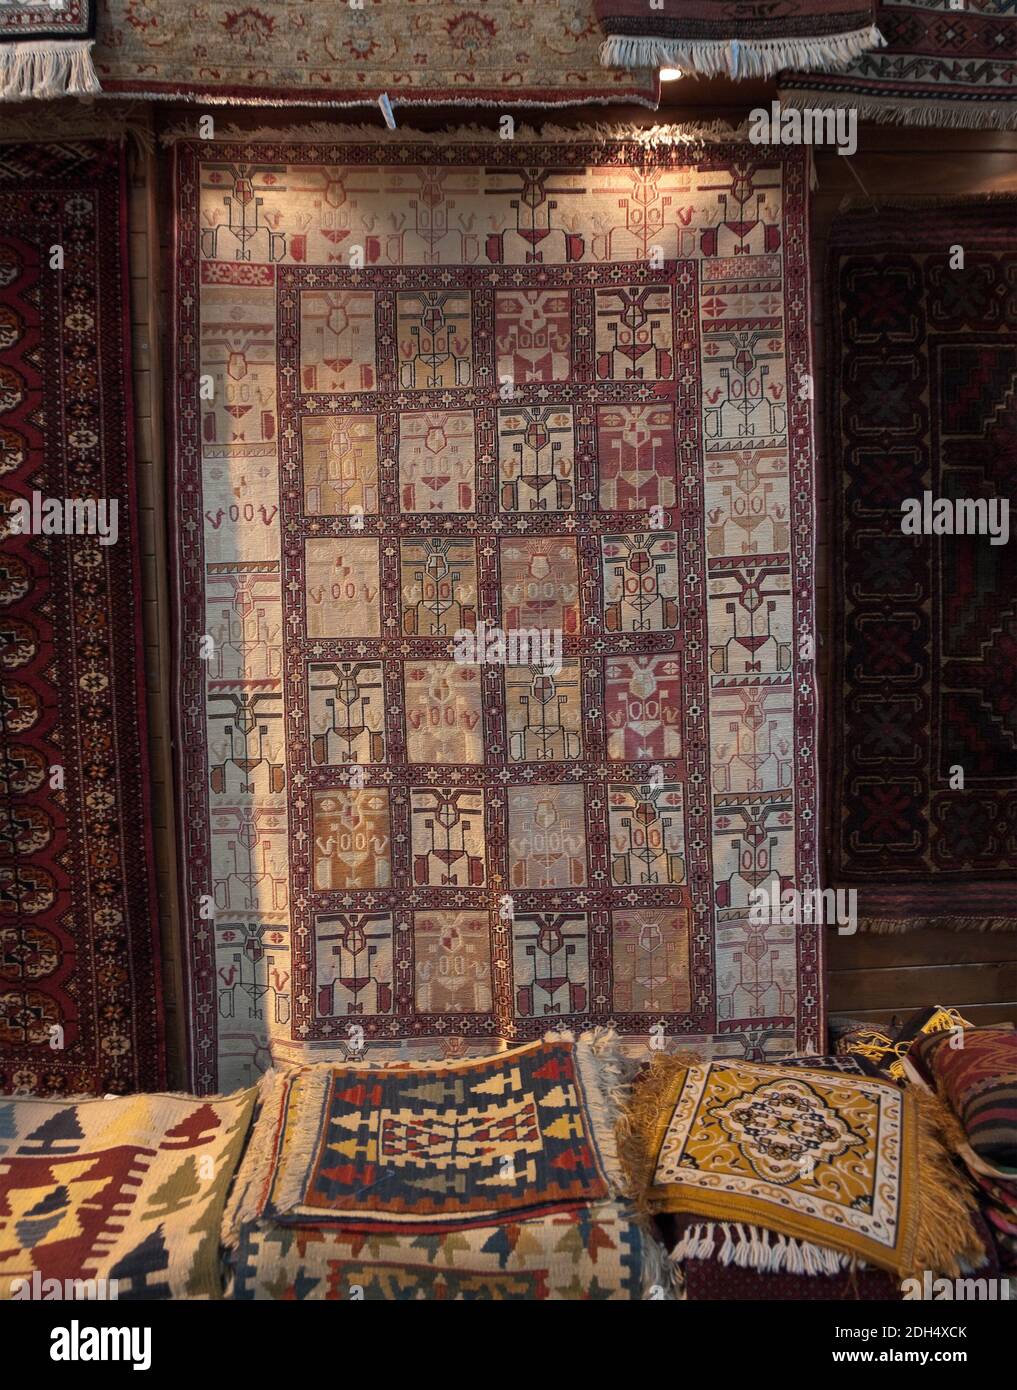 Magasin de tapis dans le Grand Bazar, Istanbul, Turquie Banque D'Images